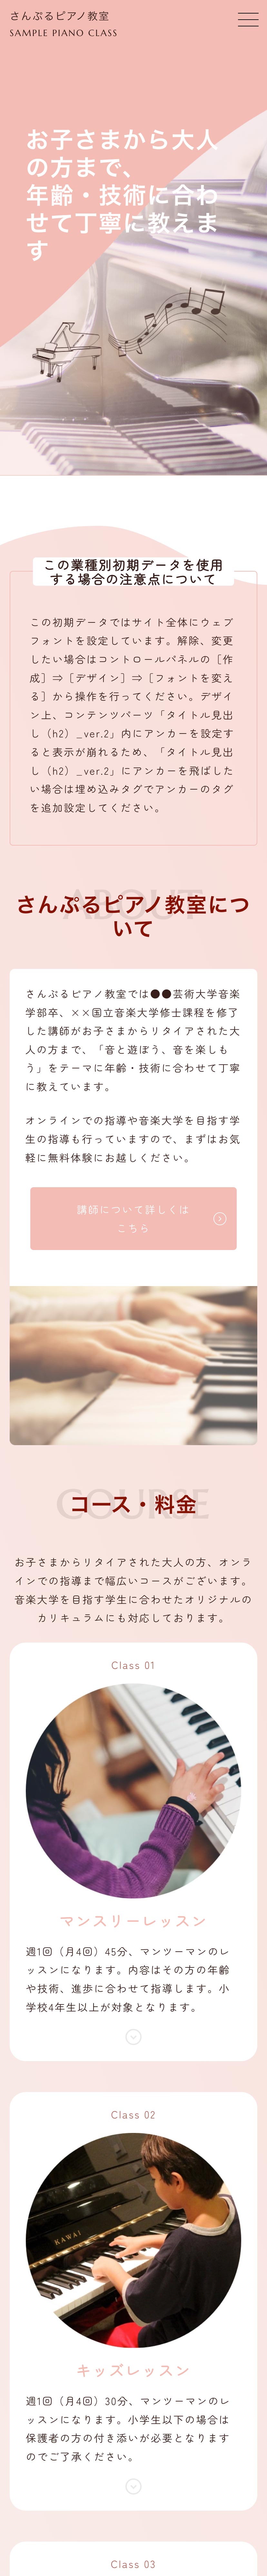 ピアノ教室系01トップページモバイル表示